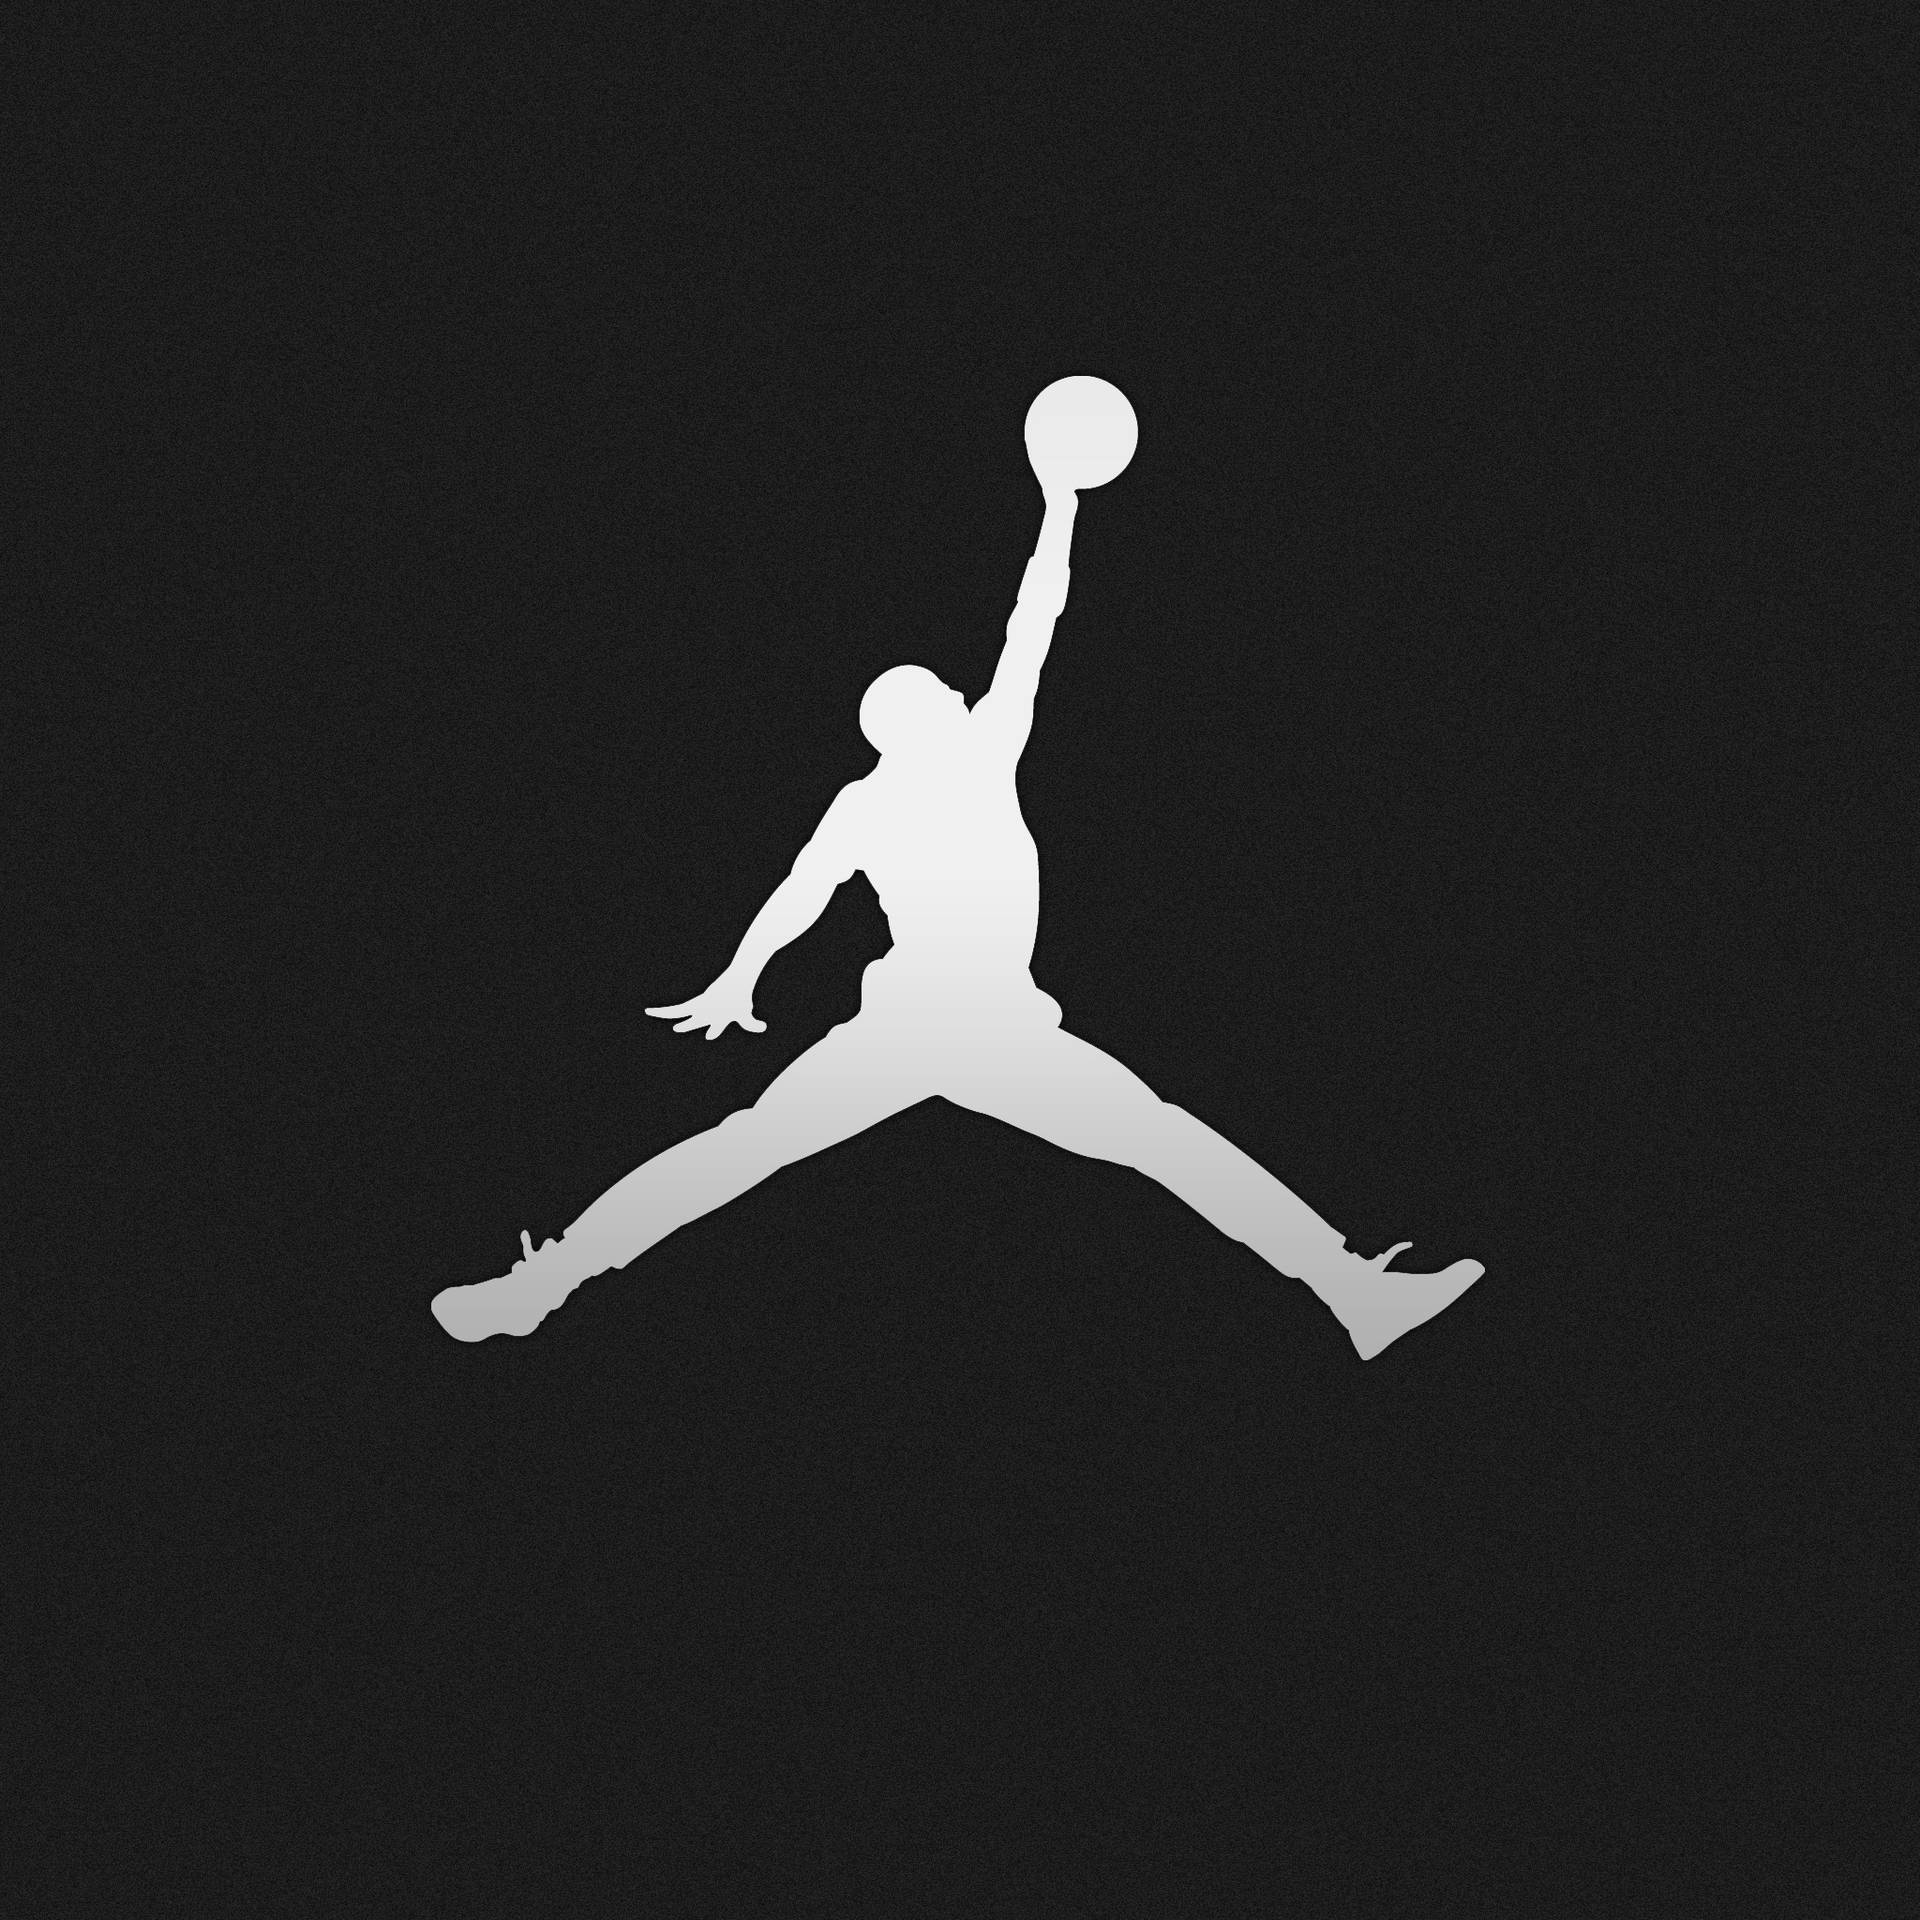 [200+] Jordan Logo Wallpapers | Wallpapers.com